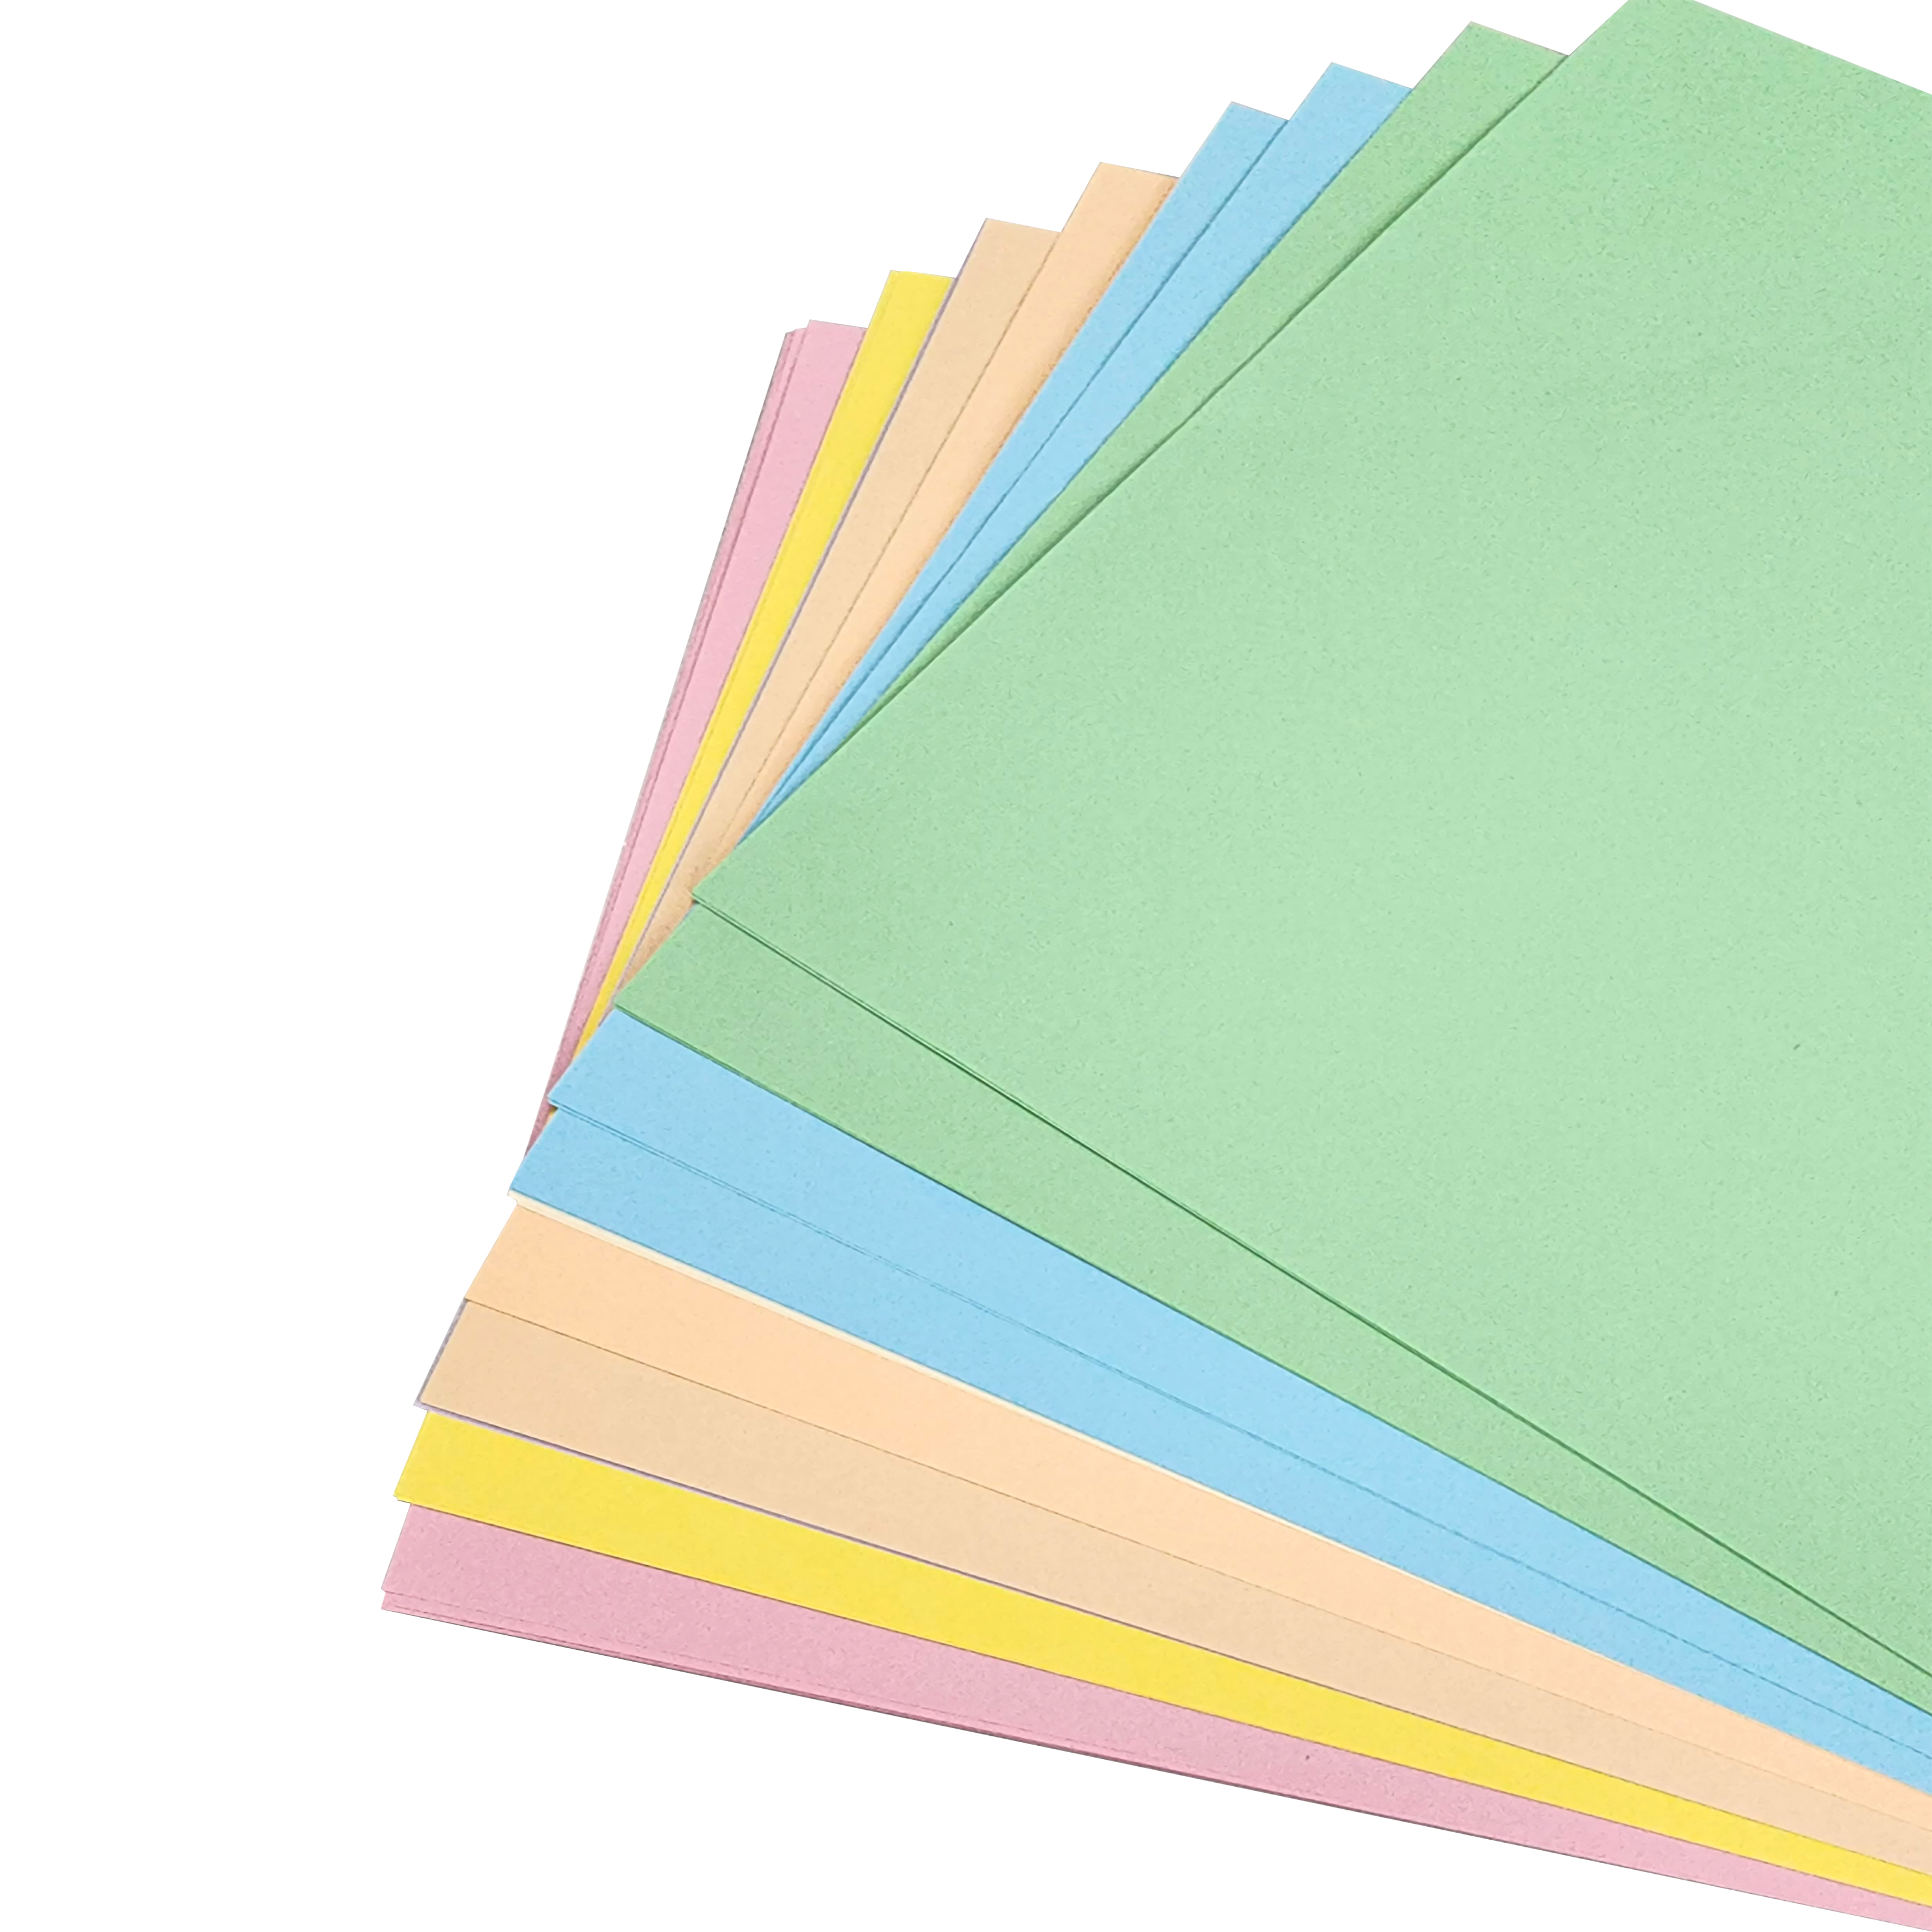 25 Hojas de Papel bond de colores Suaves (Pasteles) Tamaño Carta PAPER LINE